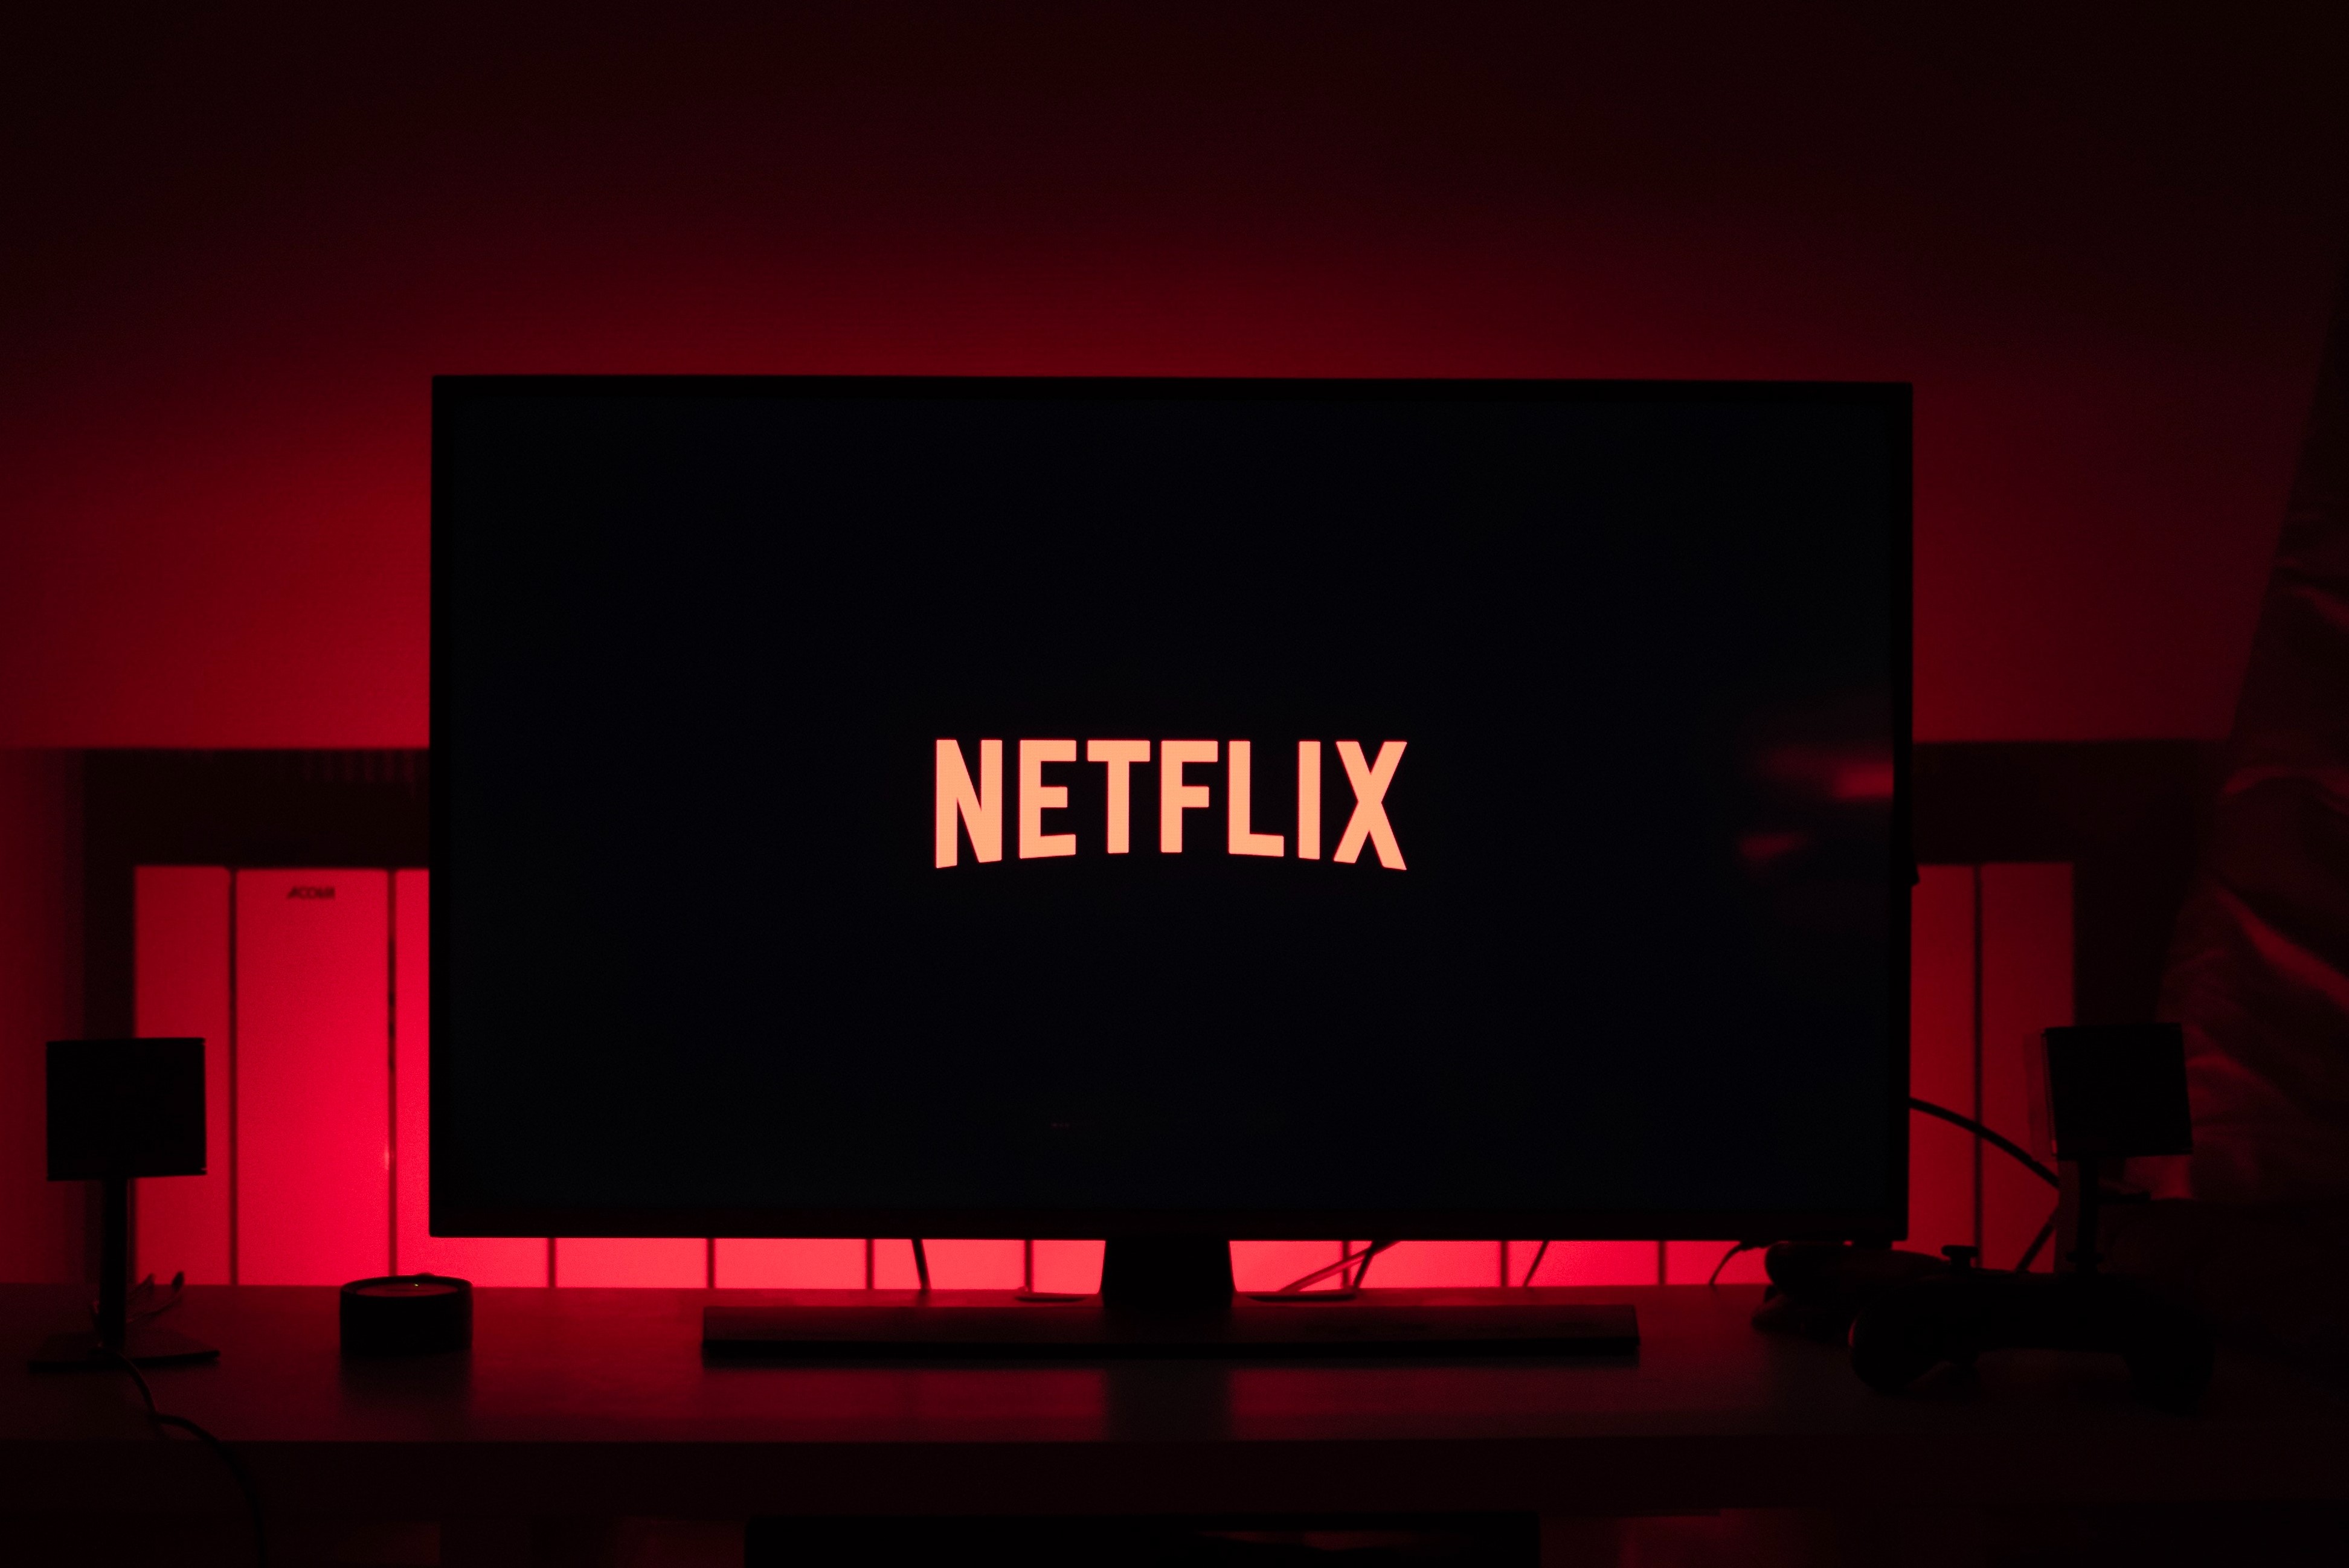 Netflix’te izlenebilecek her diziyi izlediniz mi? Emin misiniz?